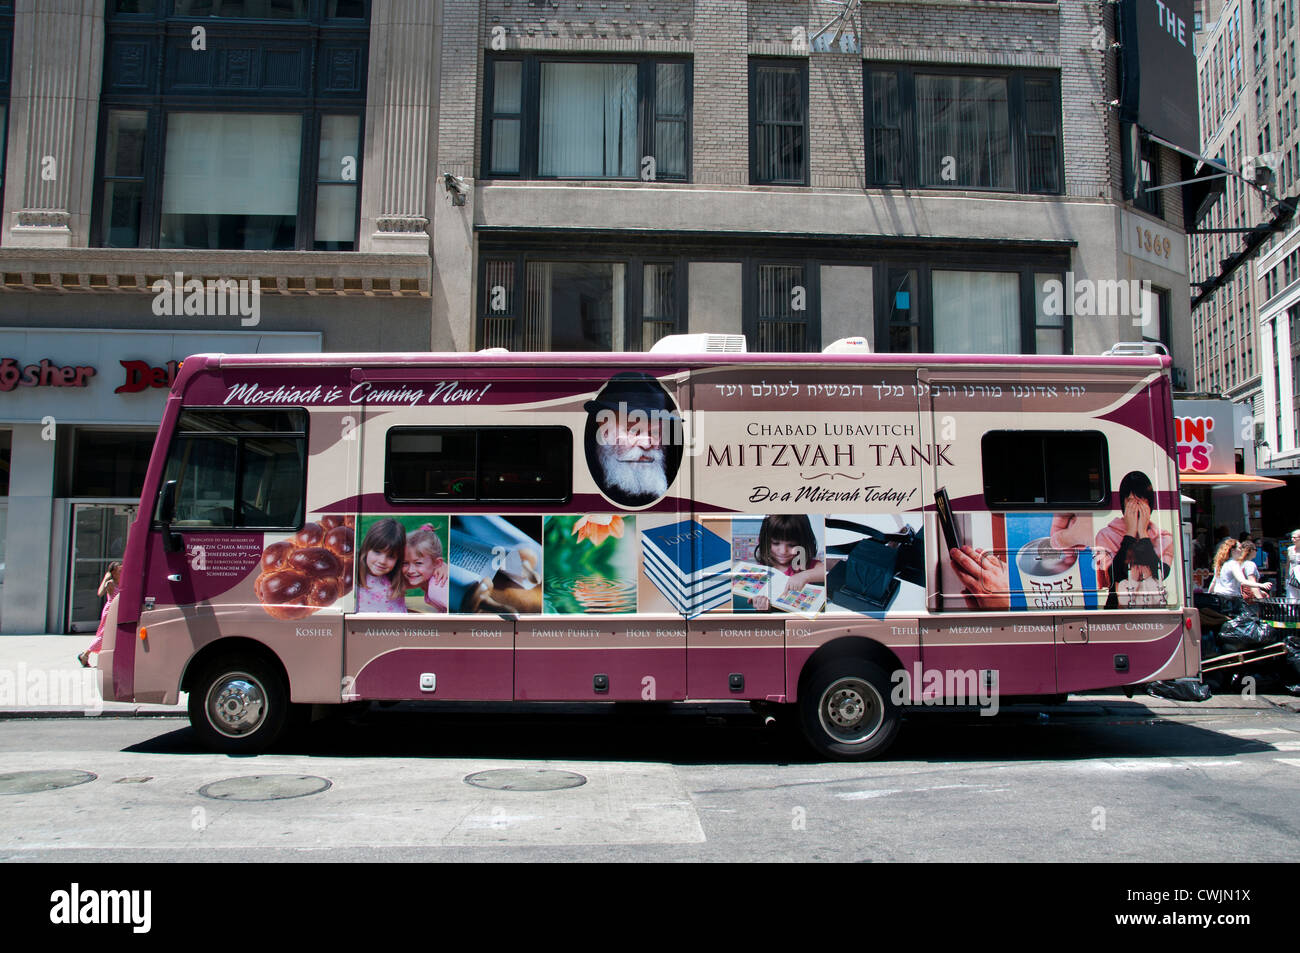 Judíos judíos asidicos Chabad Los tanques mitzvah de Lubavitch o sinagogas sobre ruedas Manhattan, Nueva York, Estados Unidos de América, Estados Unidos de América Foto de stock